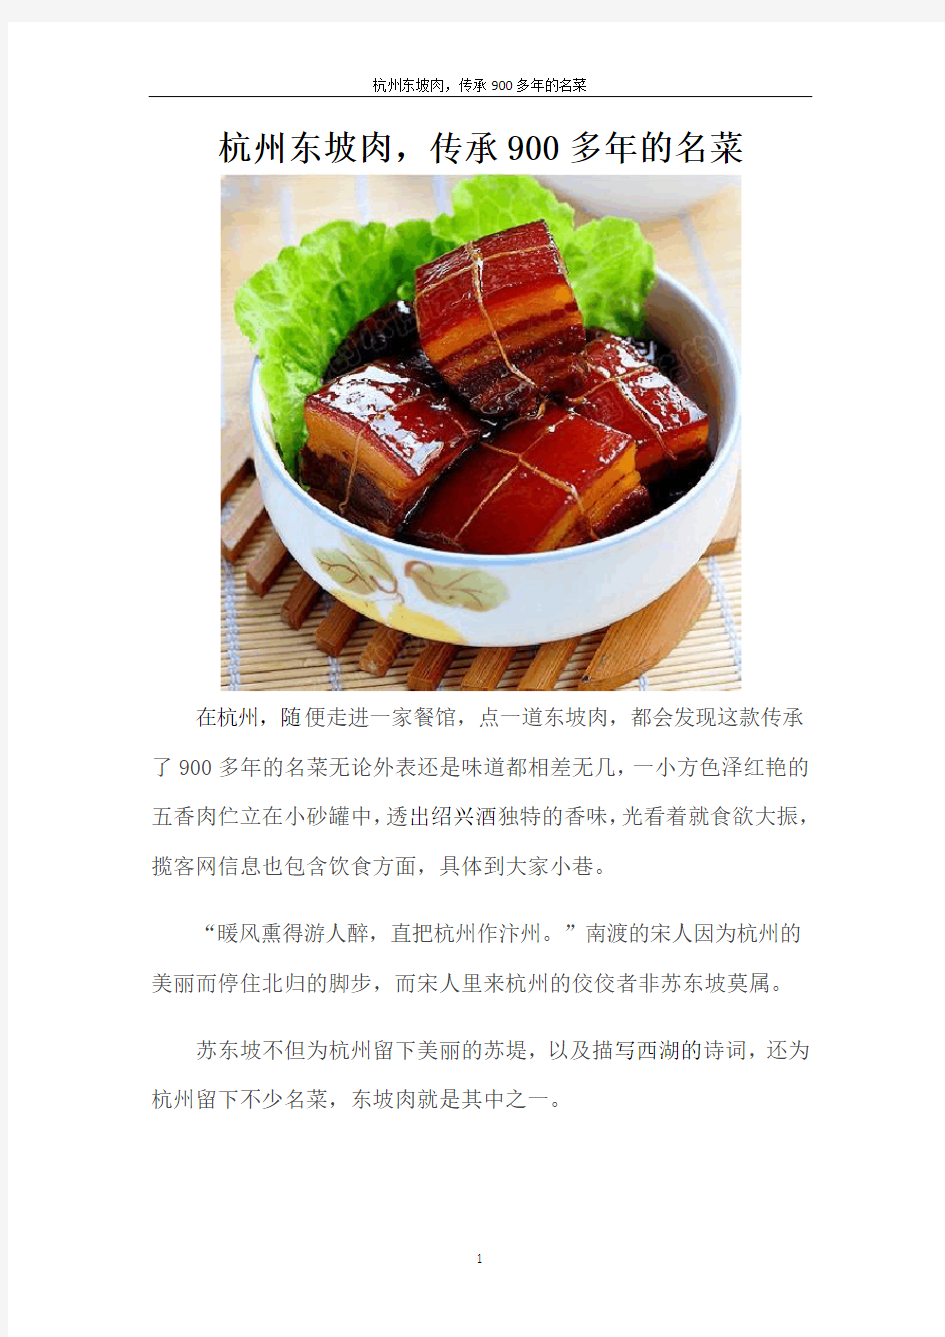 杭州东坡肉,传承900多年的名菜